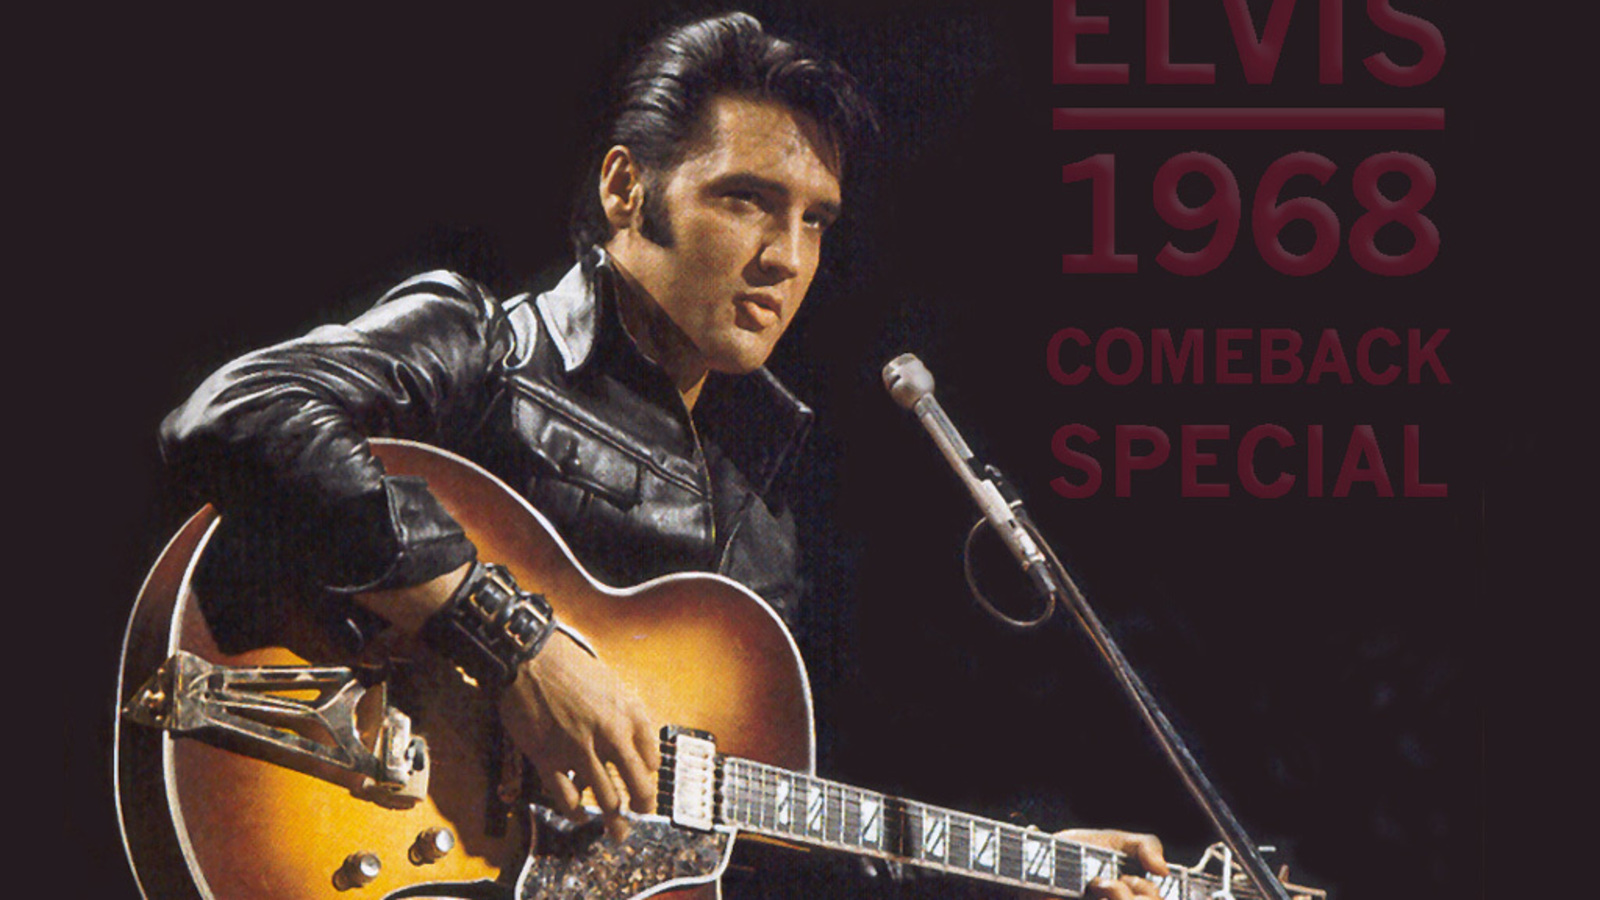 Elvis Presley Computer Wallpapers, Desktop Backgrounds | 1600x900 ...